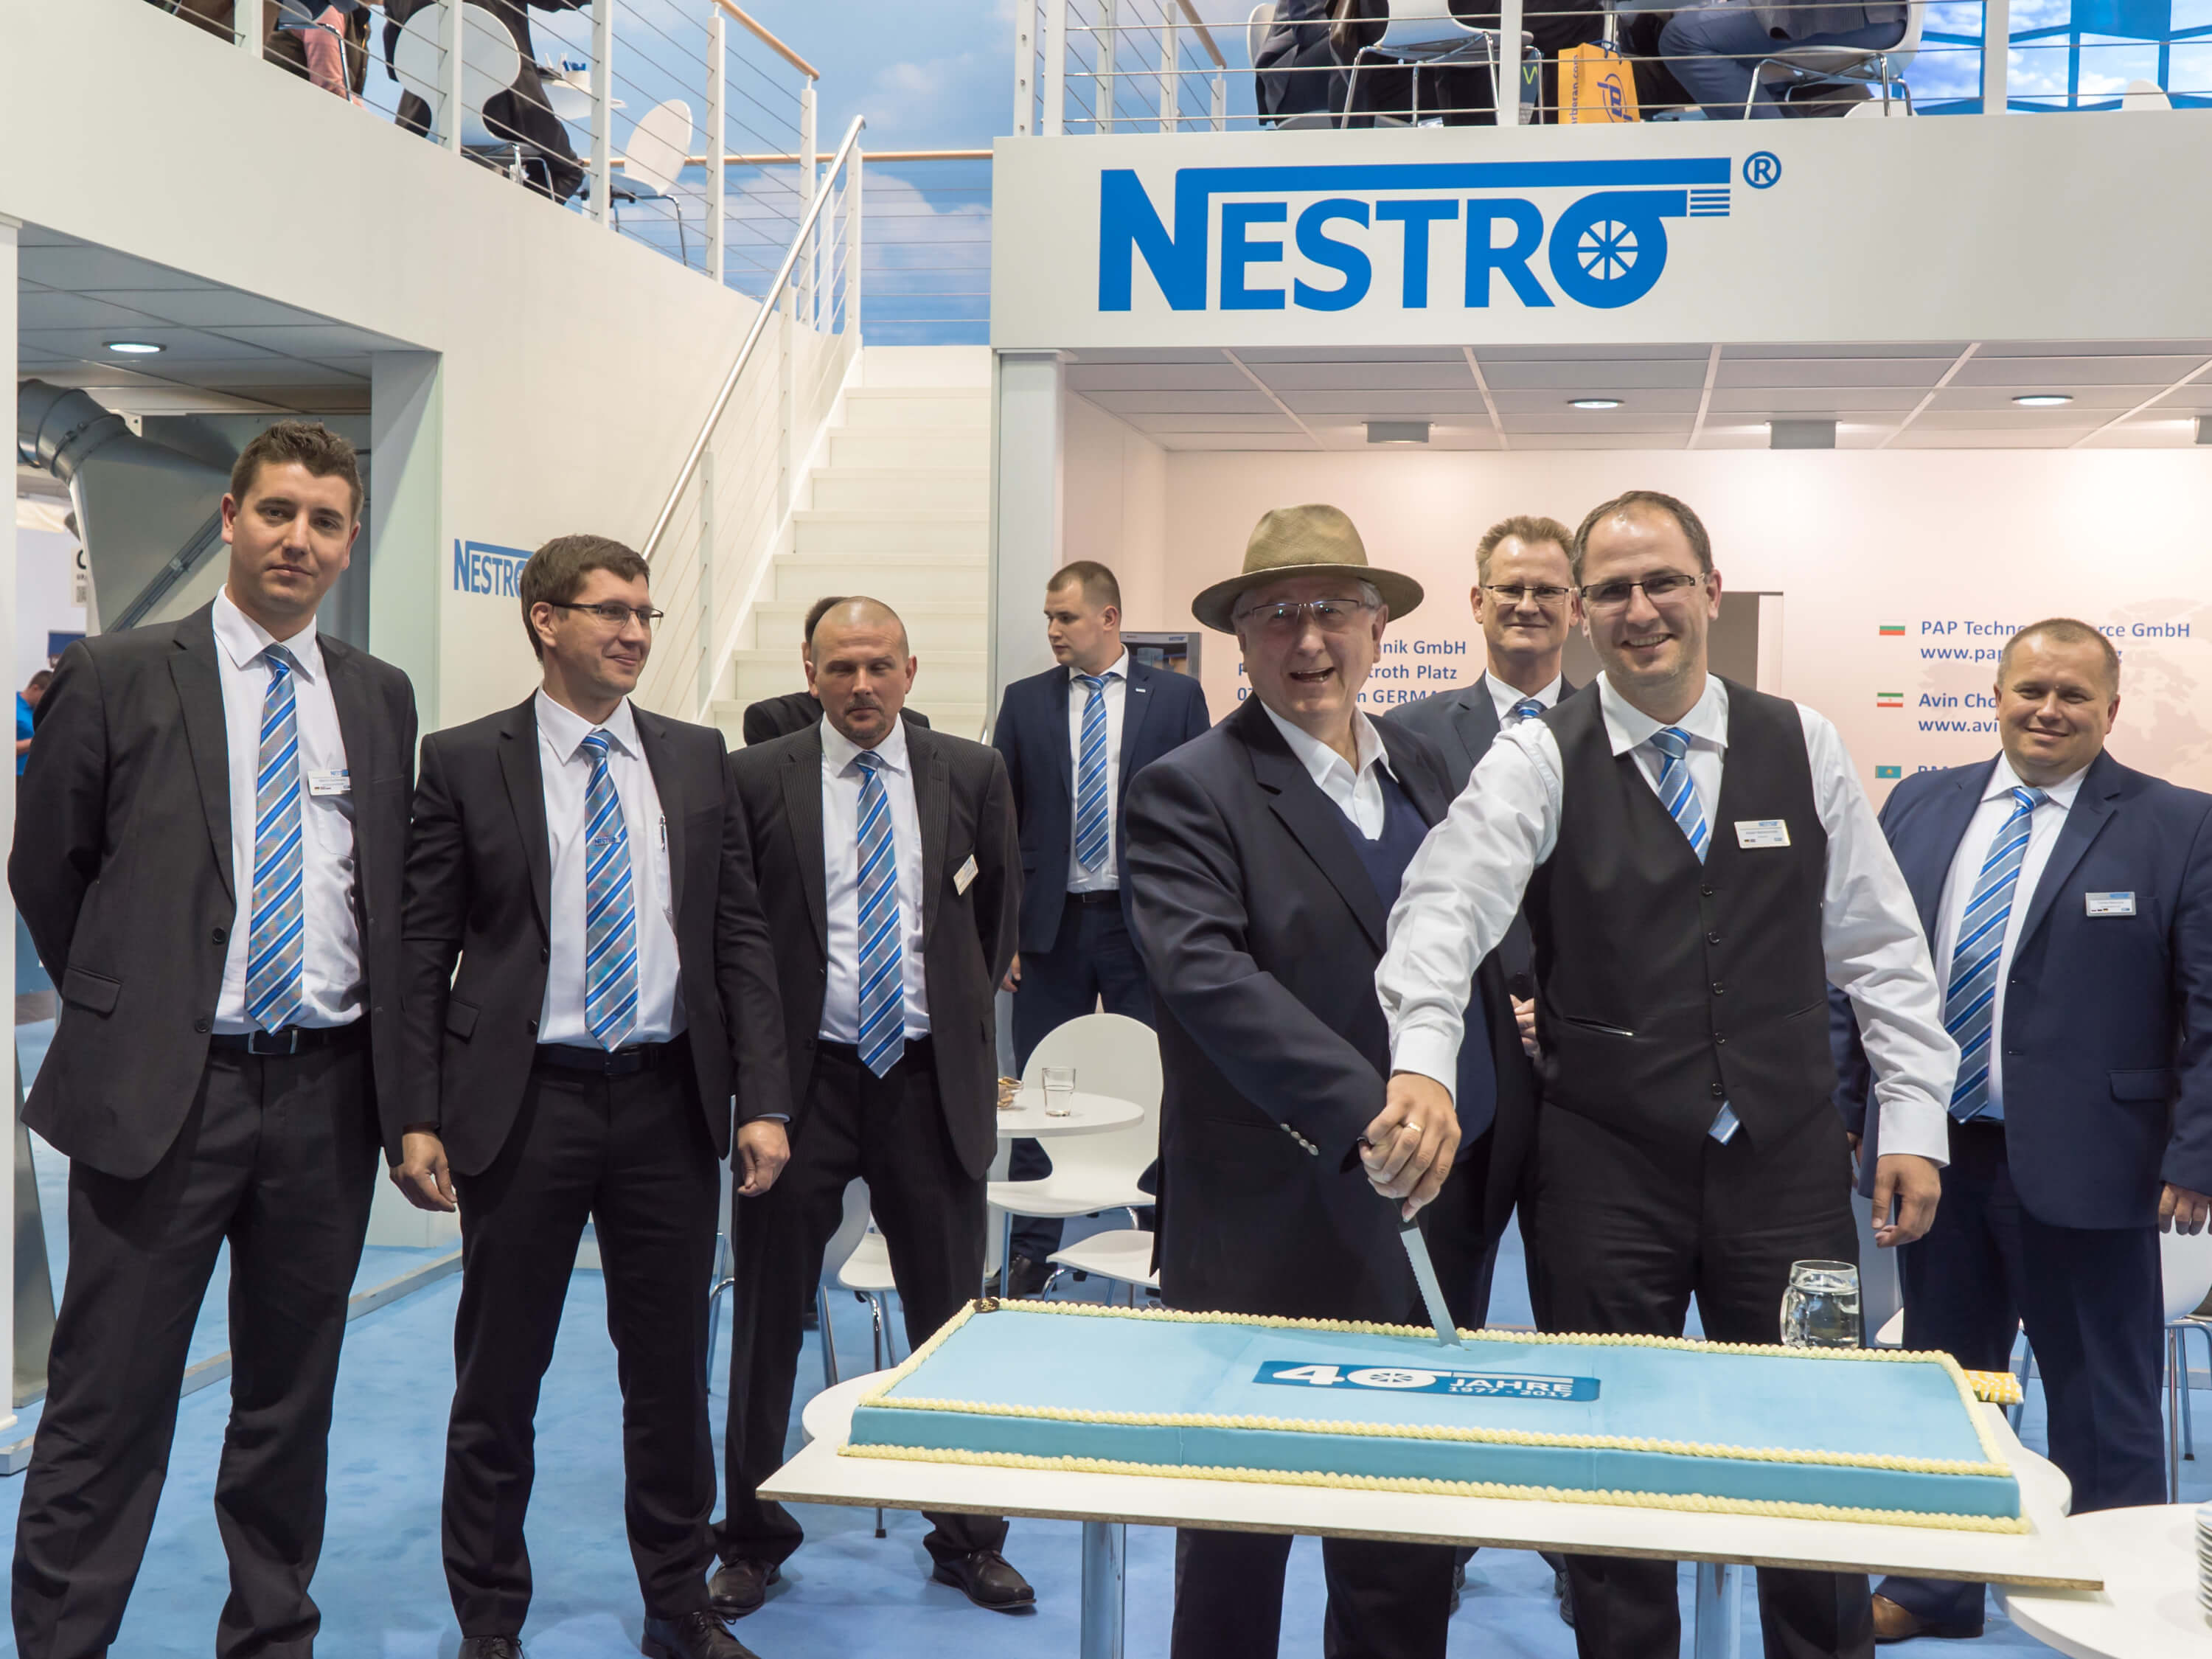 2017 júniusában ünnepelte a Nestro  működésének 40. évfordulóját